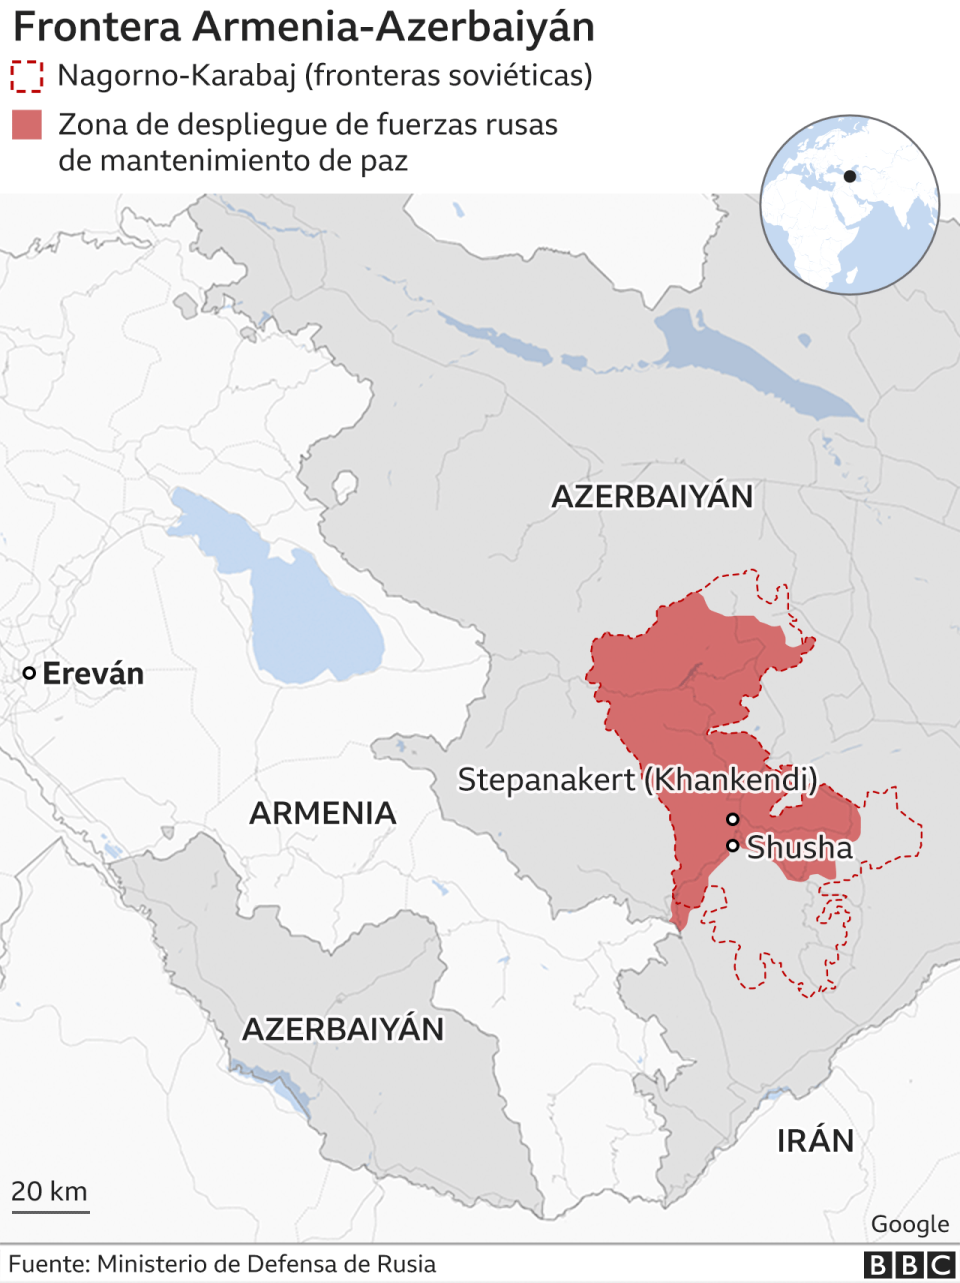 Frontera Armenia - Azerbaiyán.